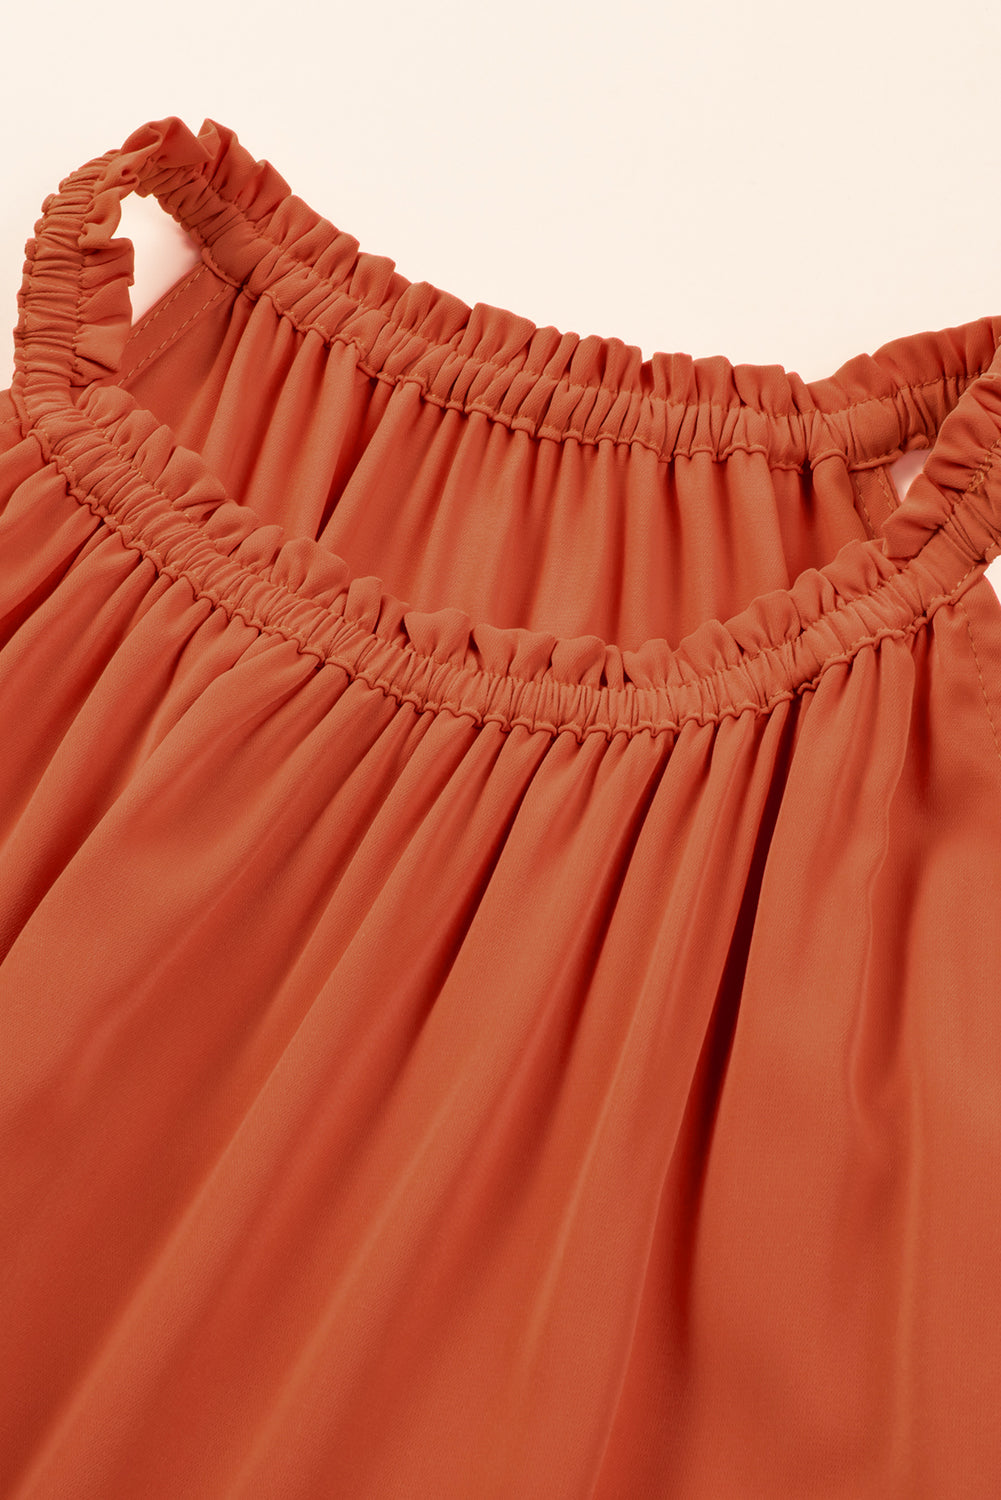 Russet Orange Plus Size Ruffled Hem Sleeveless Long Dress